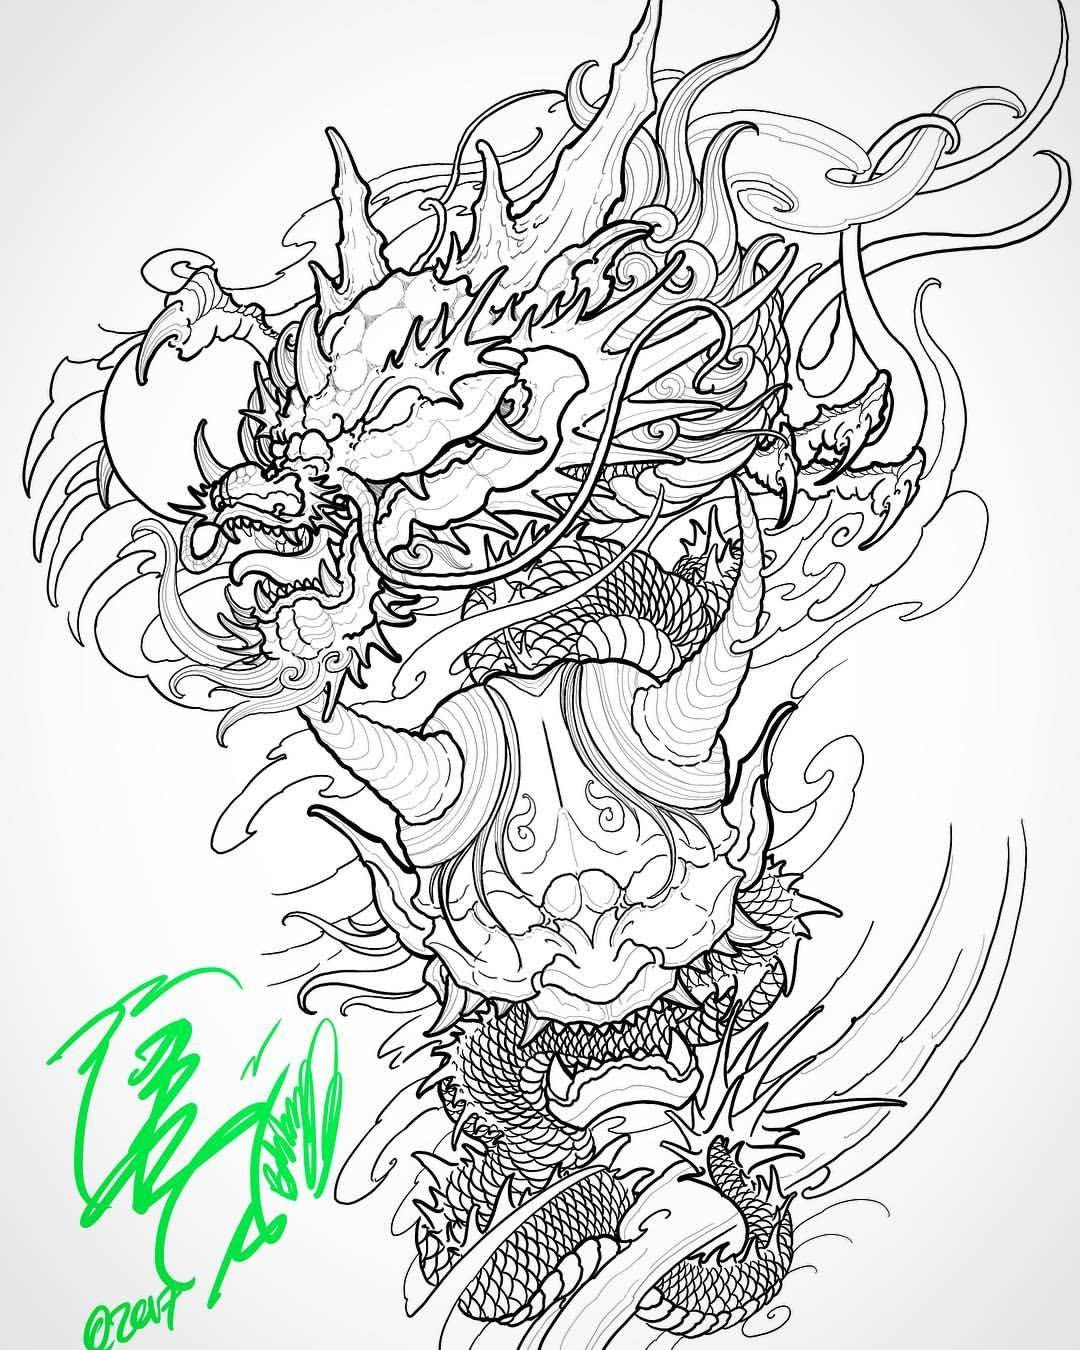 Тату в японском стиле. эскизы для мужчин, девушек на руке рукав, ноге, спине: дракон, карп, тигр, змея, рыбы, самурай, цветы, лиса, маска, феникс. фото